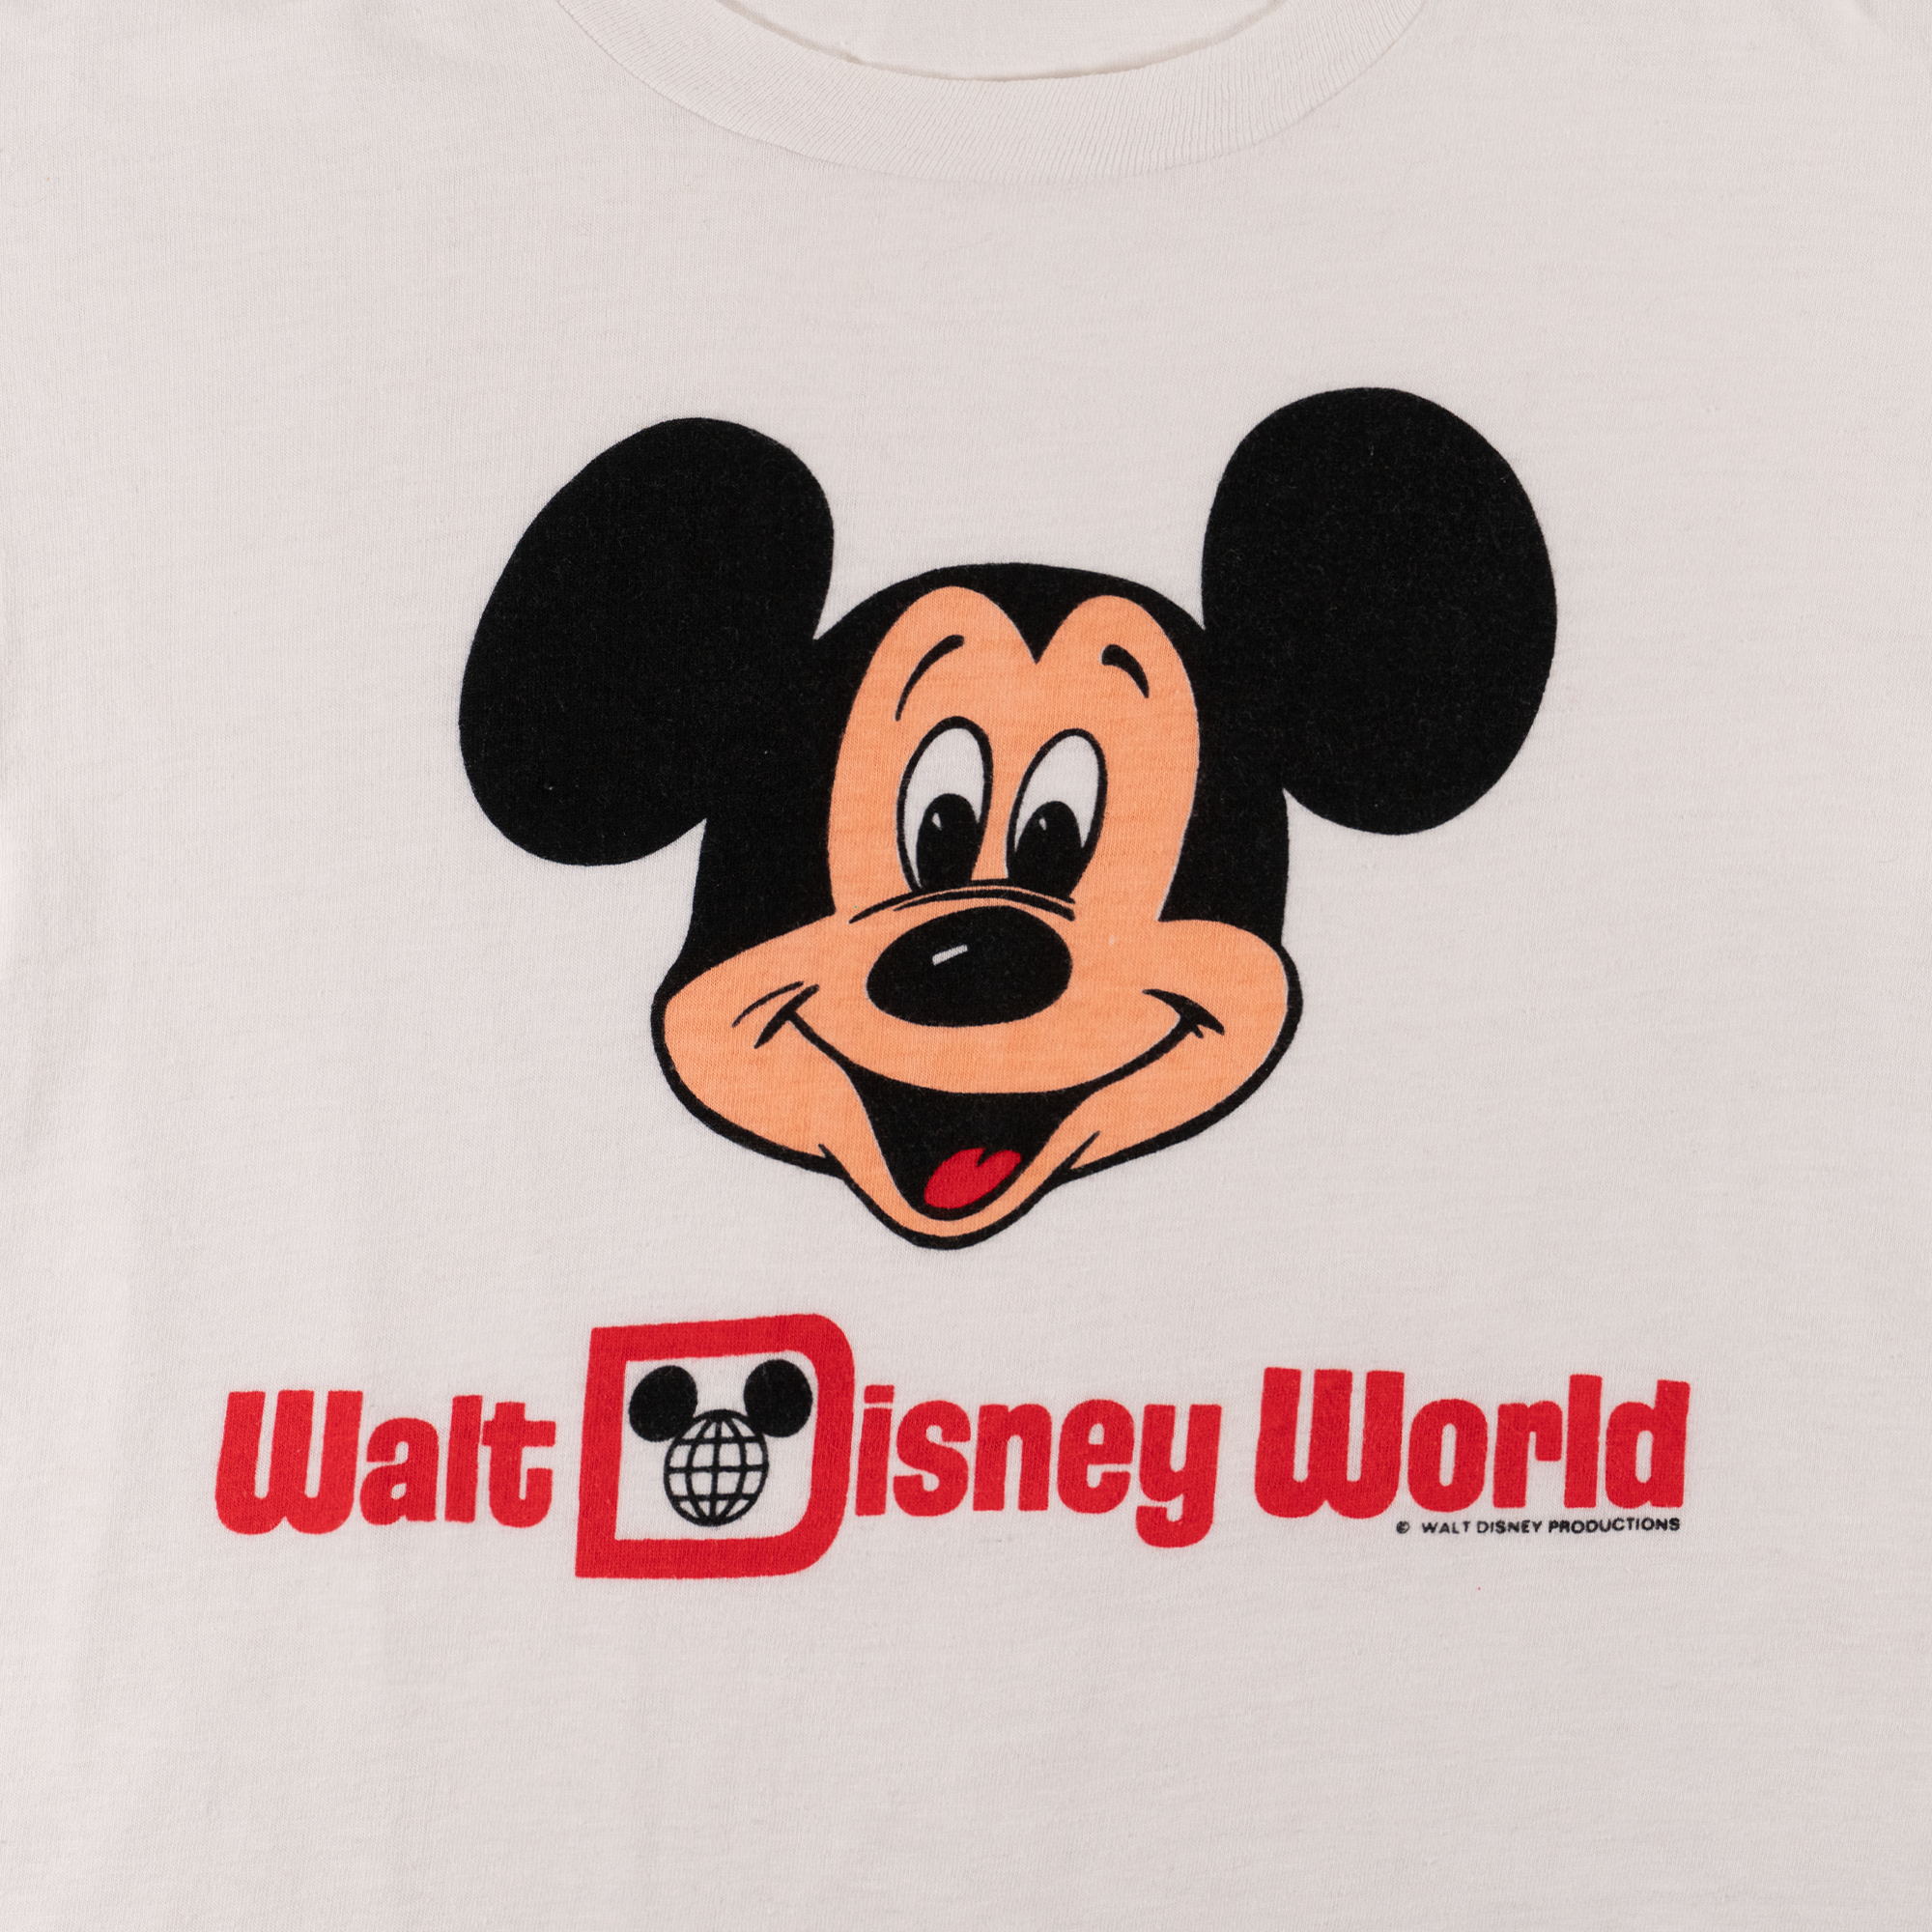 80's Mickey Mouse "Walt Disney World" Tee White-PLUS